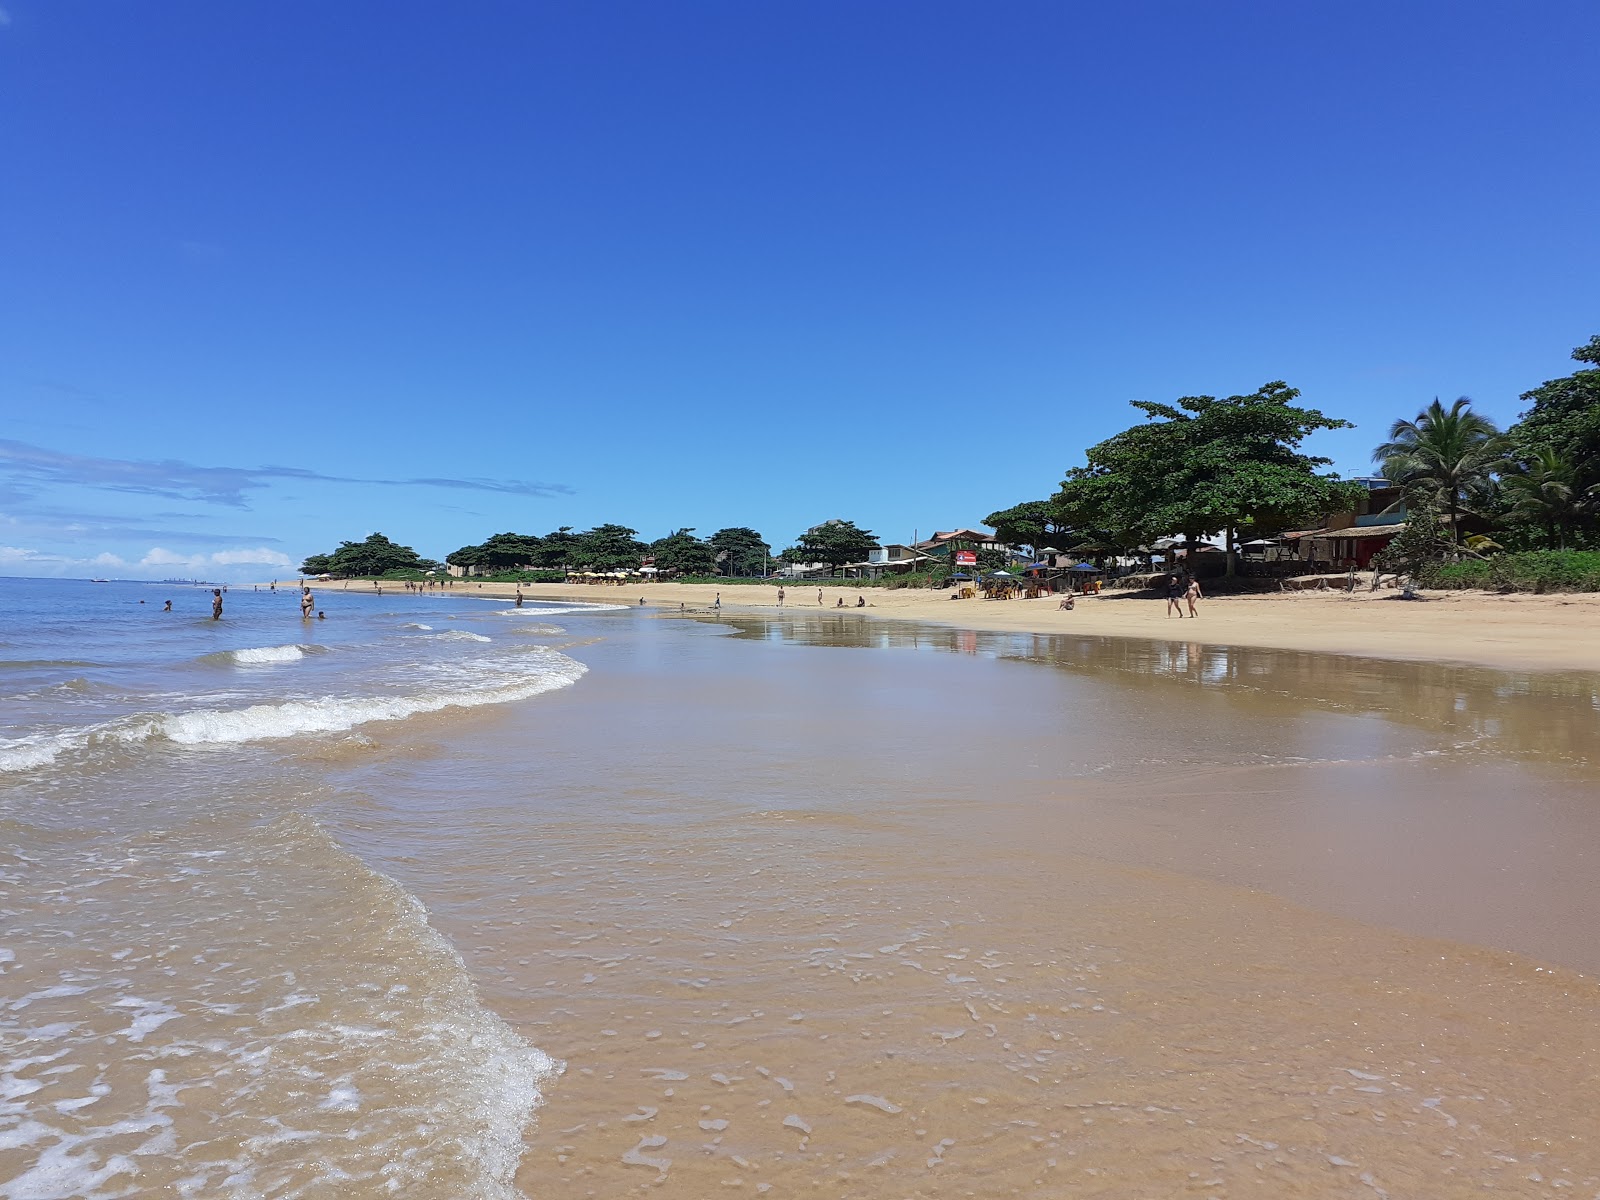 Foto av Manguinhos stranden med ljus sand yta